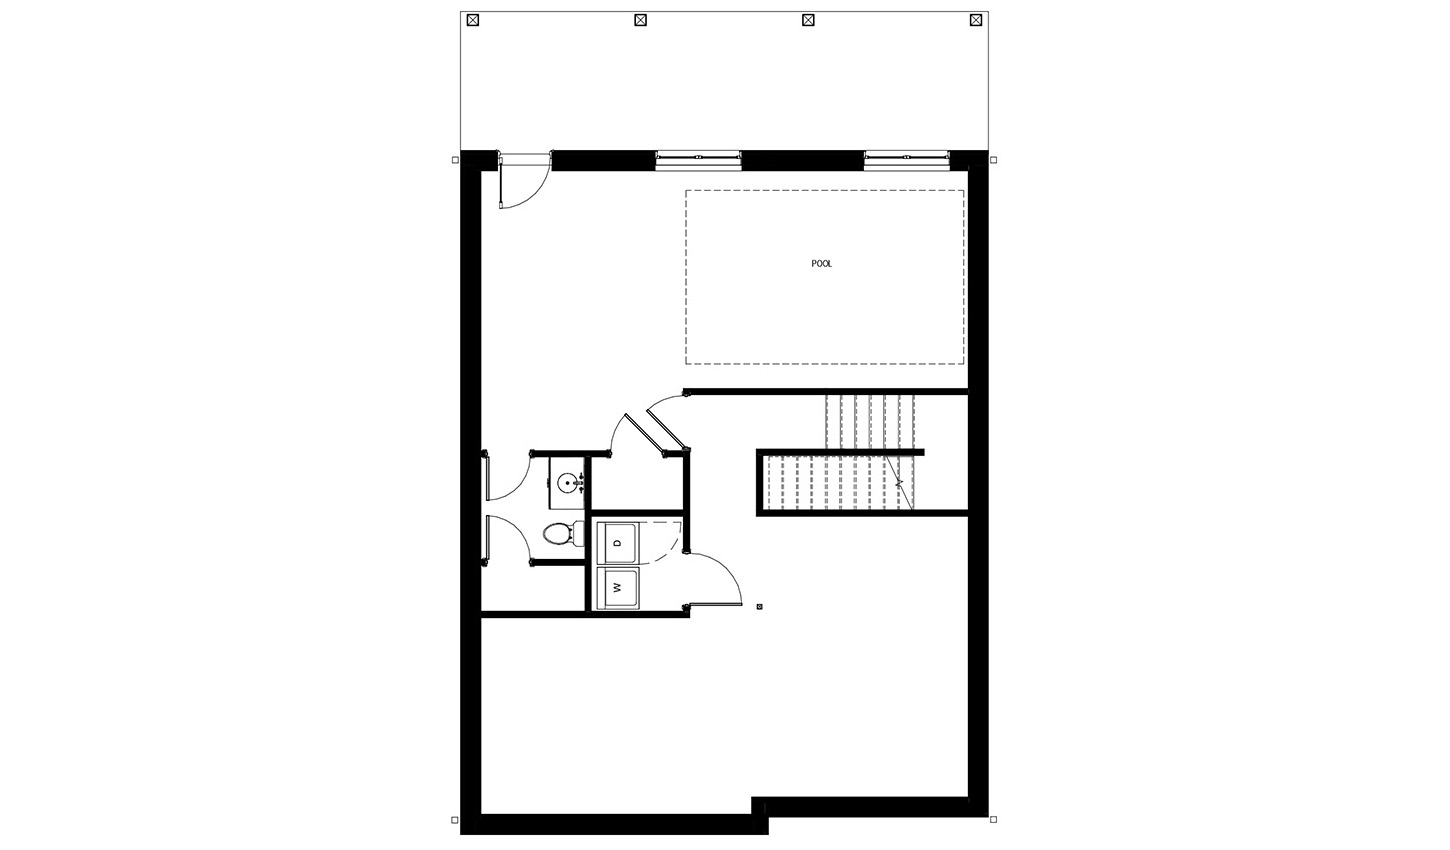 Floor plan of the 4 bedroom lower level floor plan